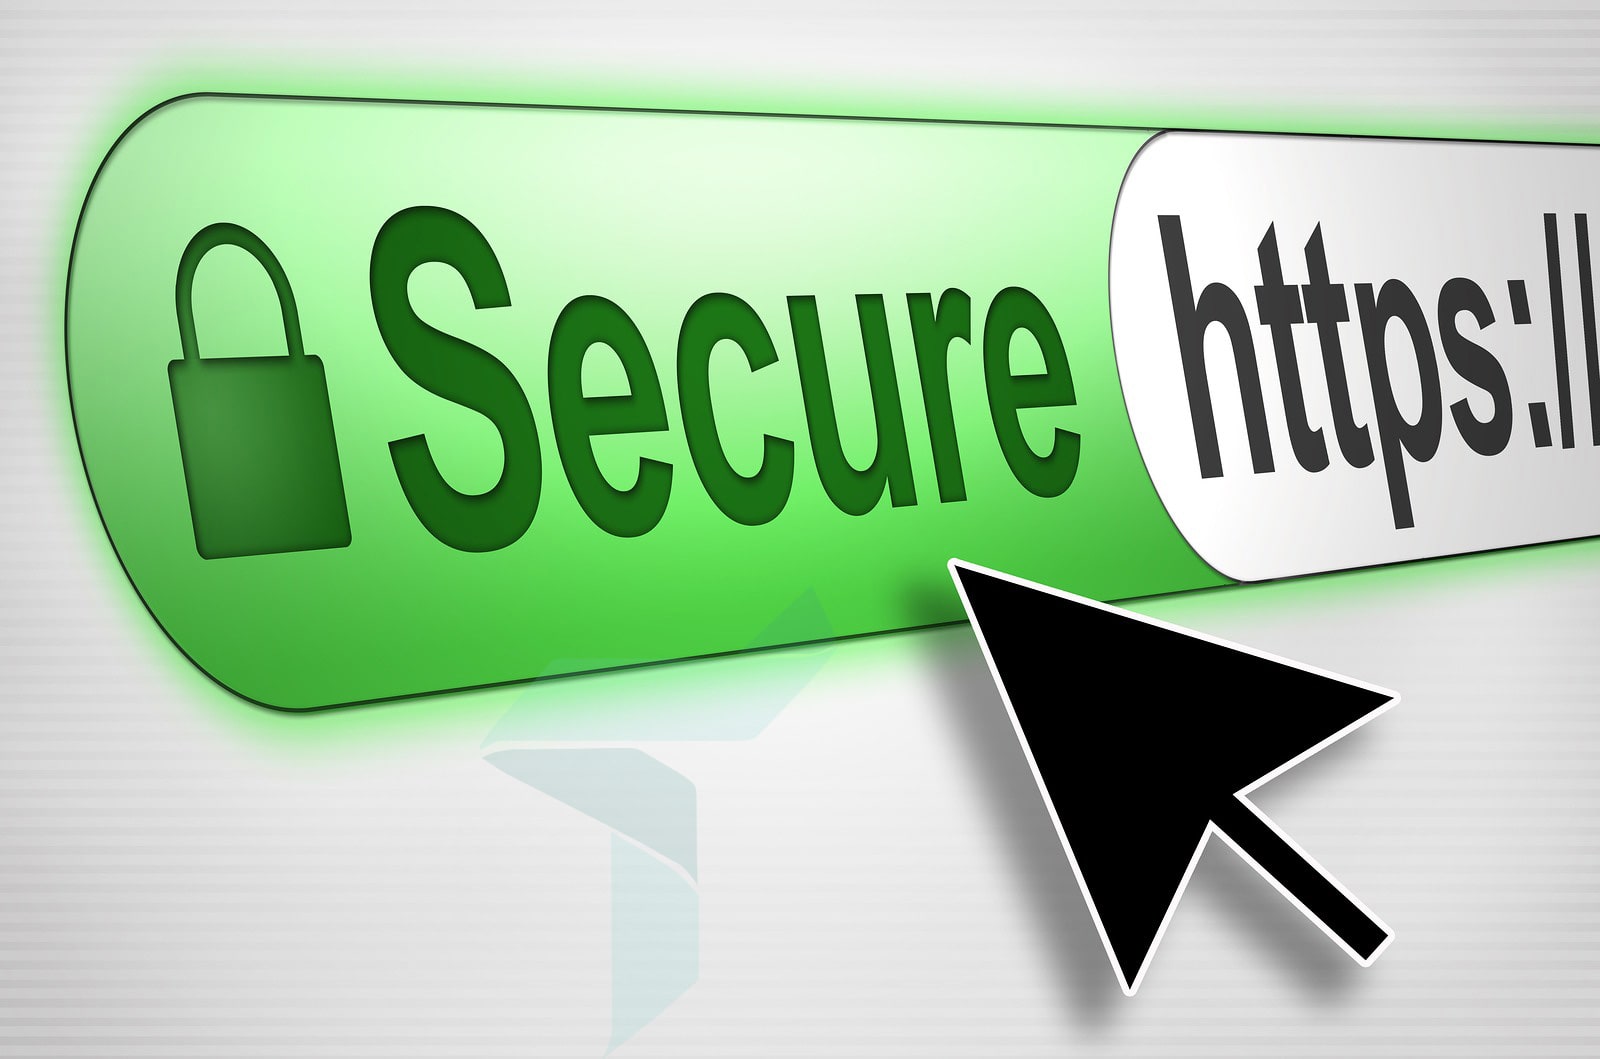 SSL چیست ؟